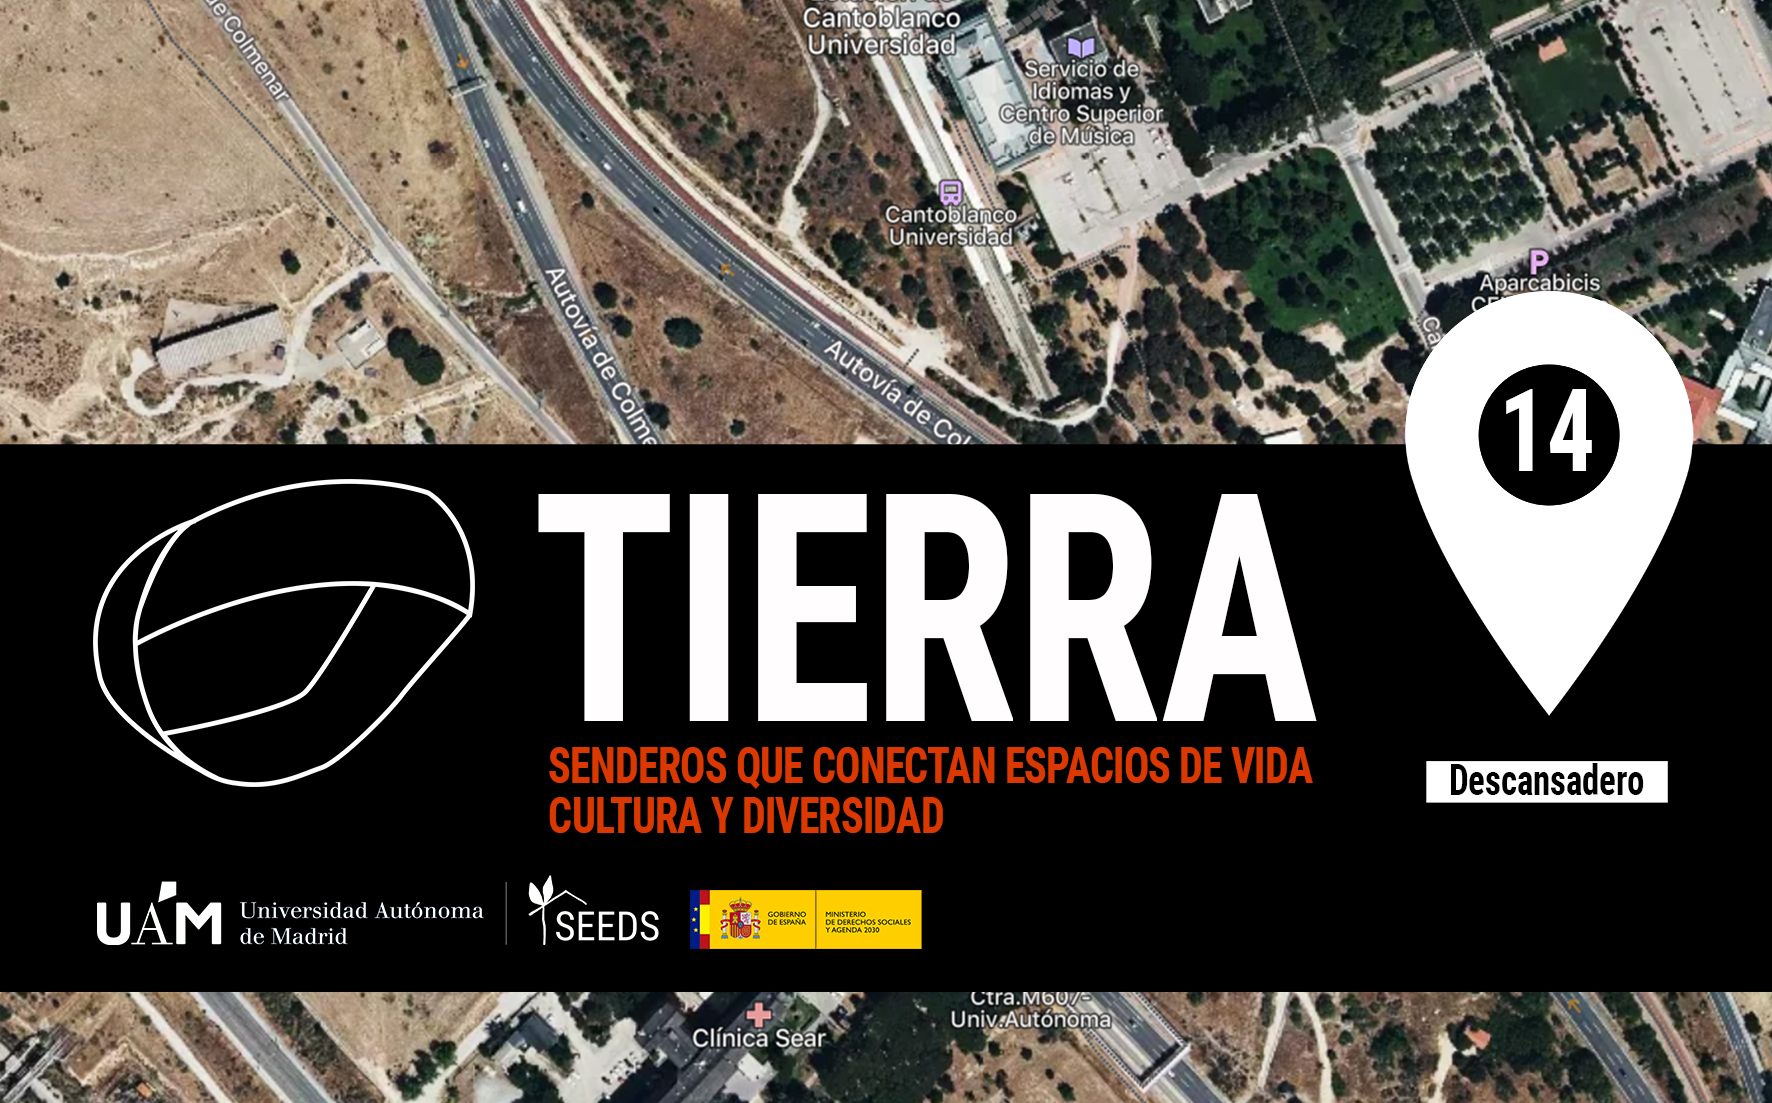 TIERRA: Descansadero 14_Senderos que conectan vida cultura diversidad